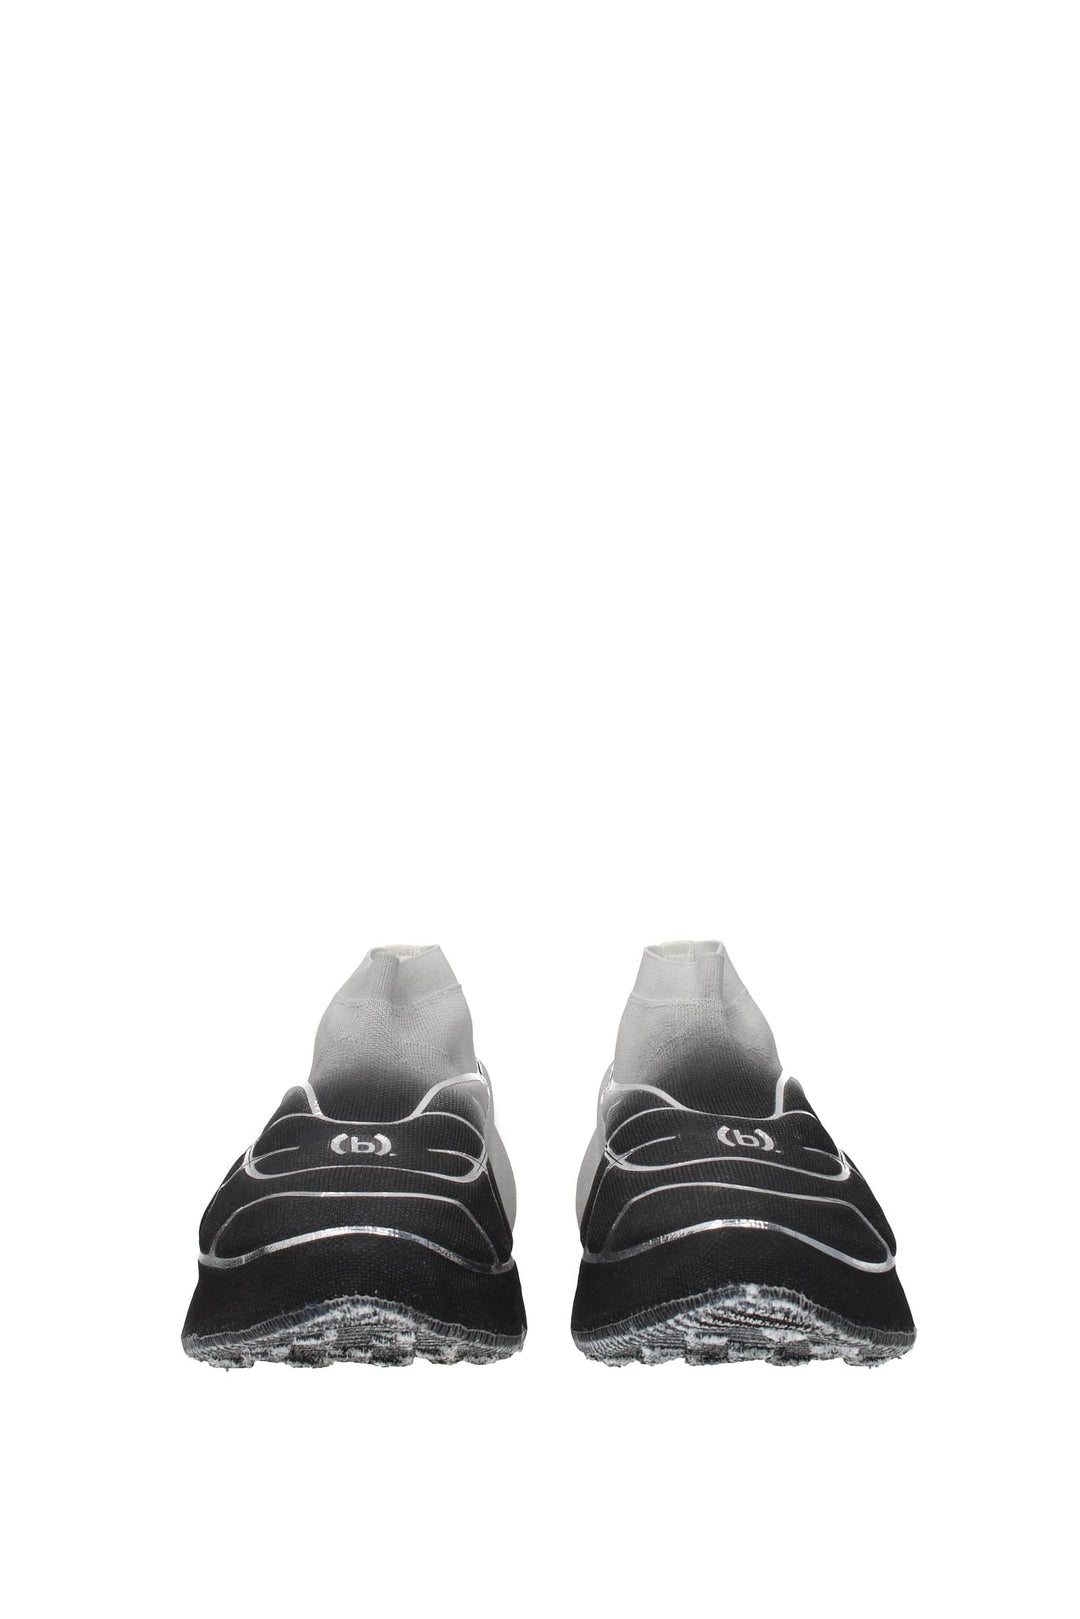 Sneakers Tk 360 Tessuto Nero Argento - Givenchy - Uomo